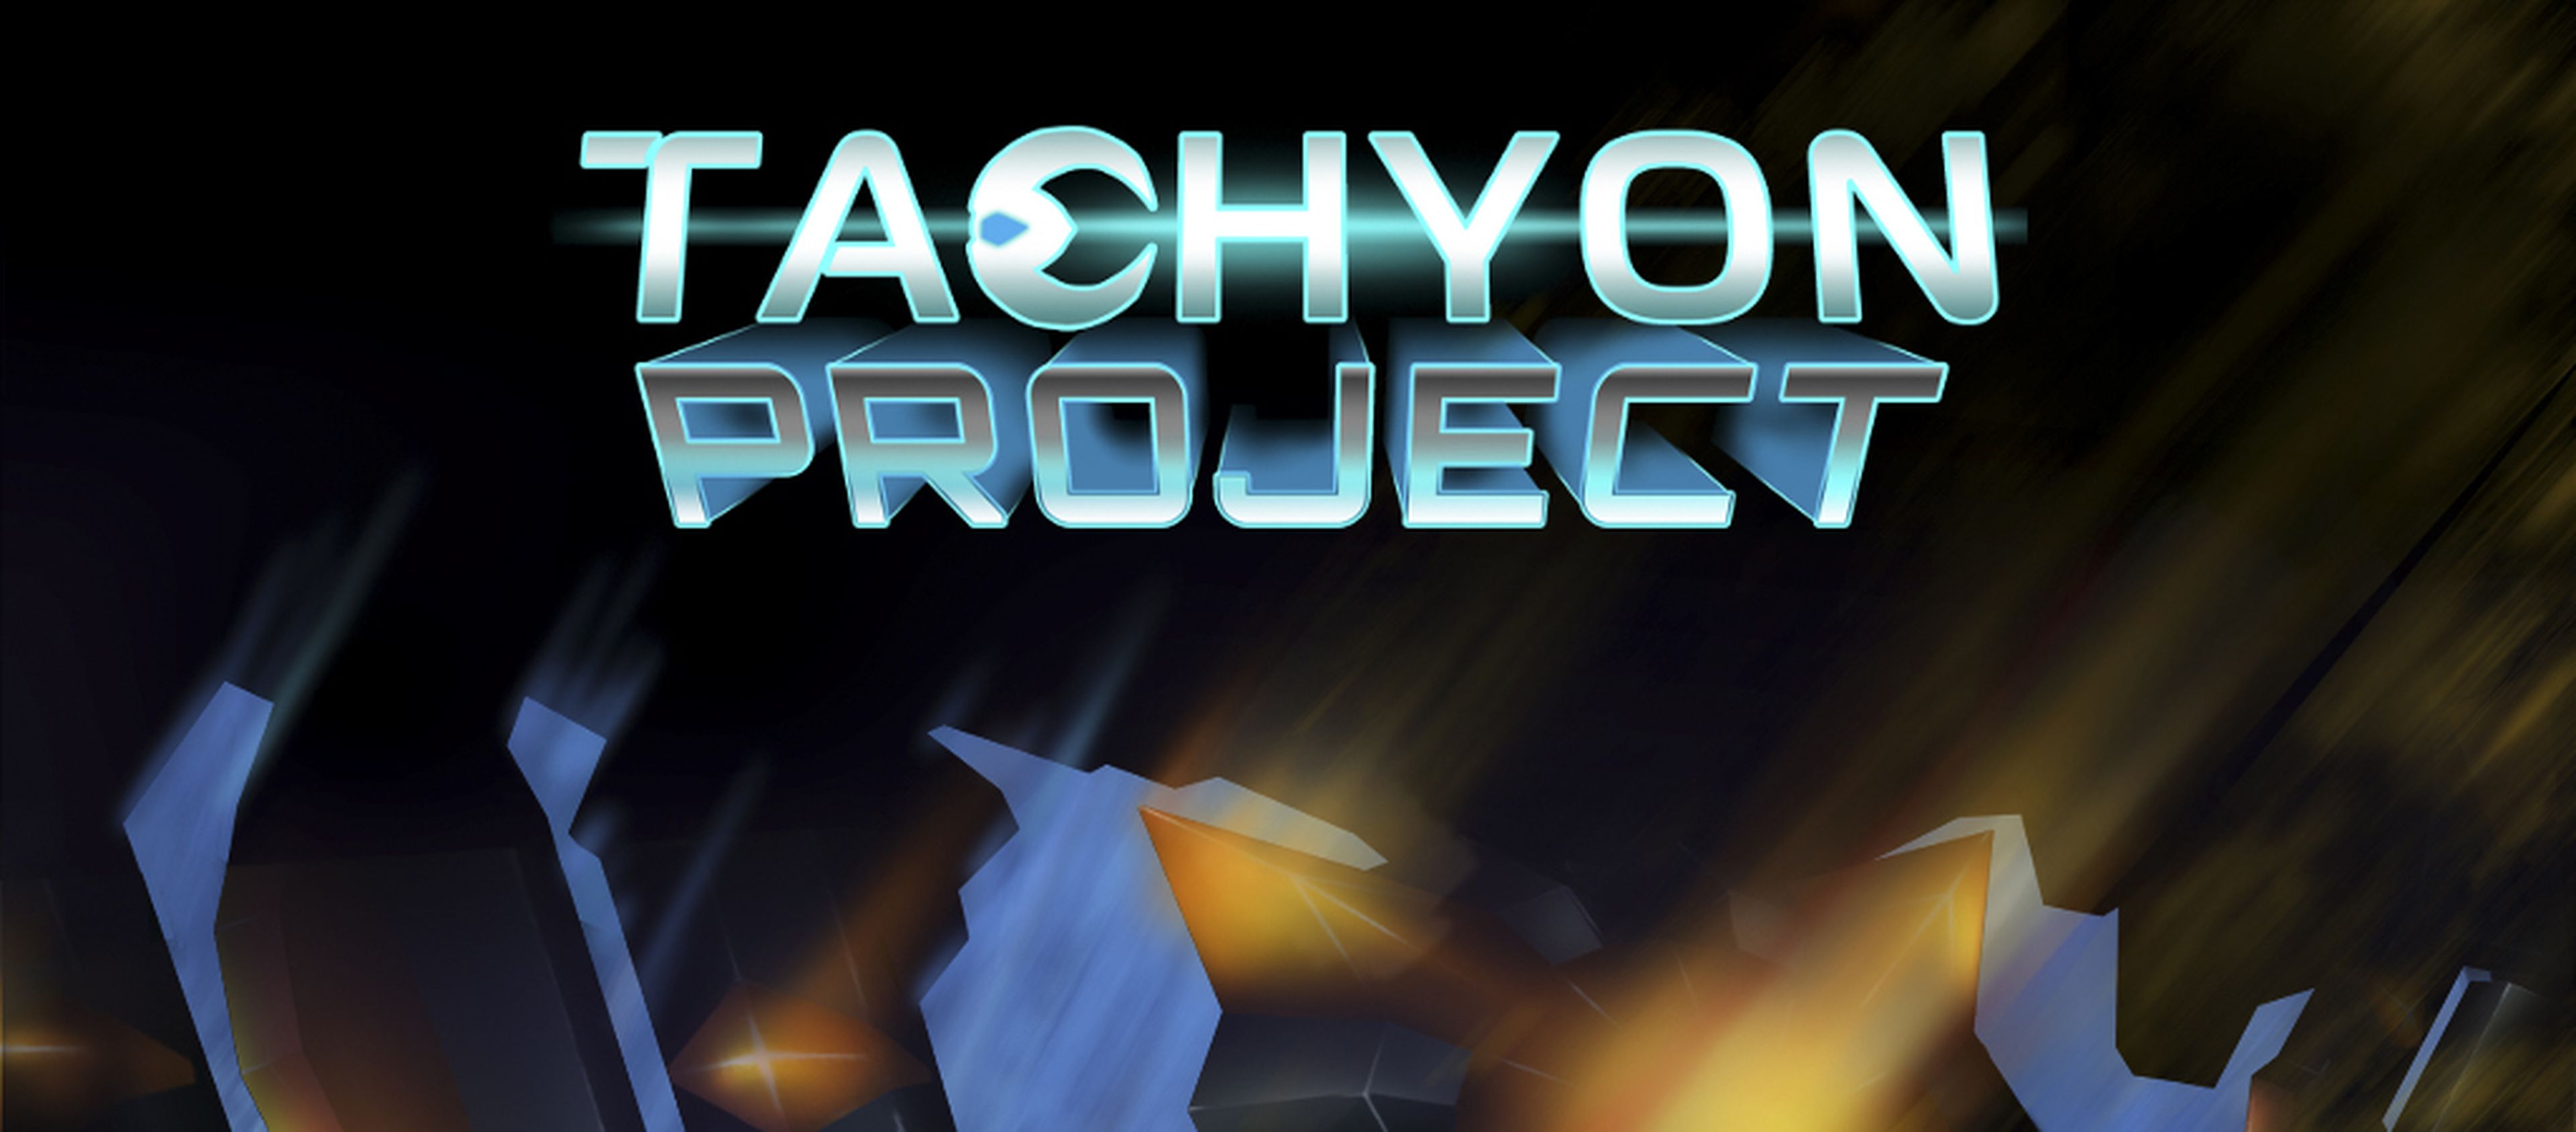 Tachyon Project disponible en PS4